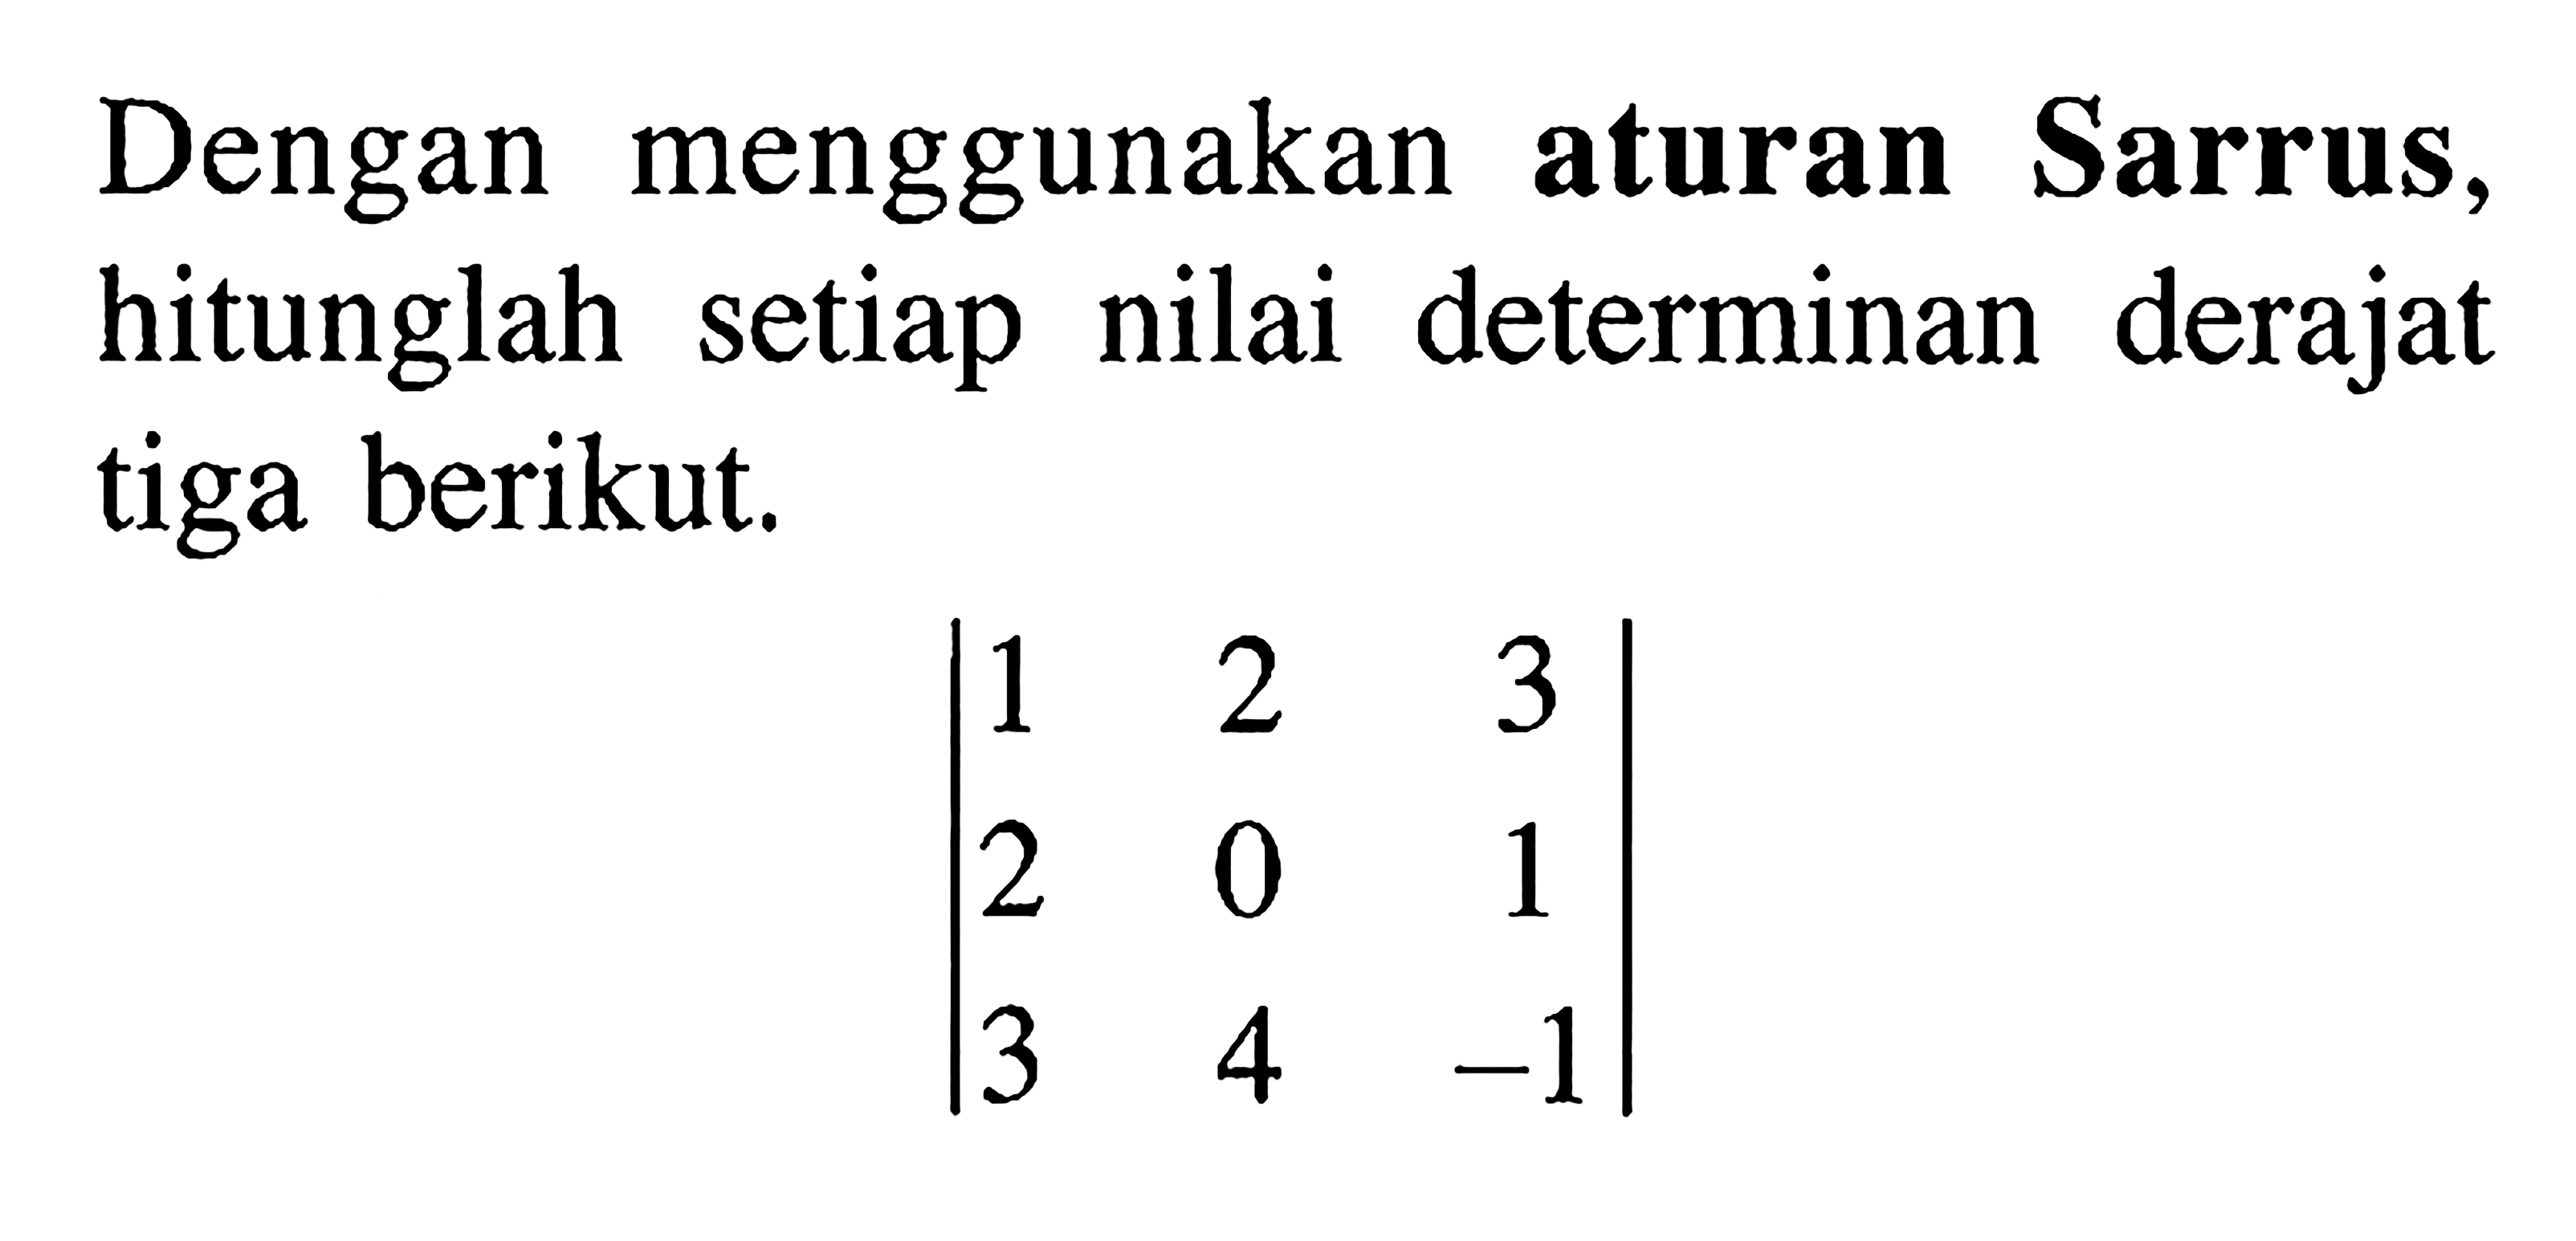 Dengan menggunakan aturan Sarrus, hitunglah setiap nilai determinan derajat tiga berikut | 1 2 3 2 0 1 3 4 -1|